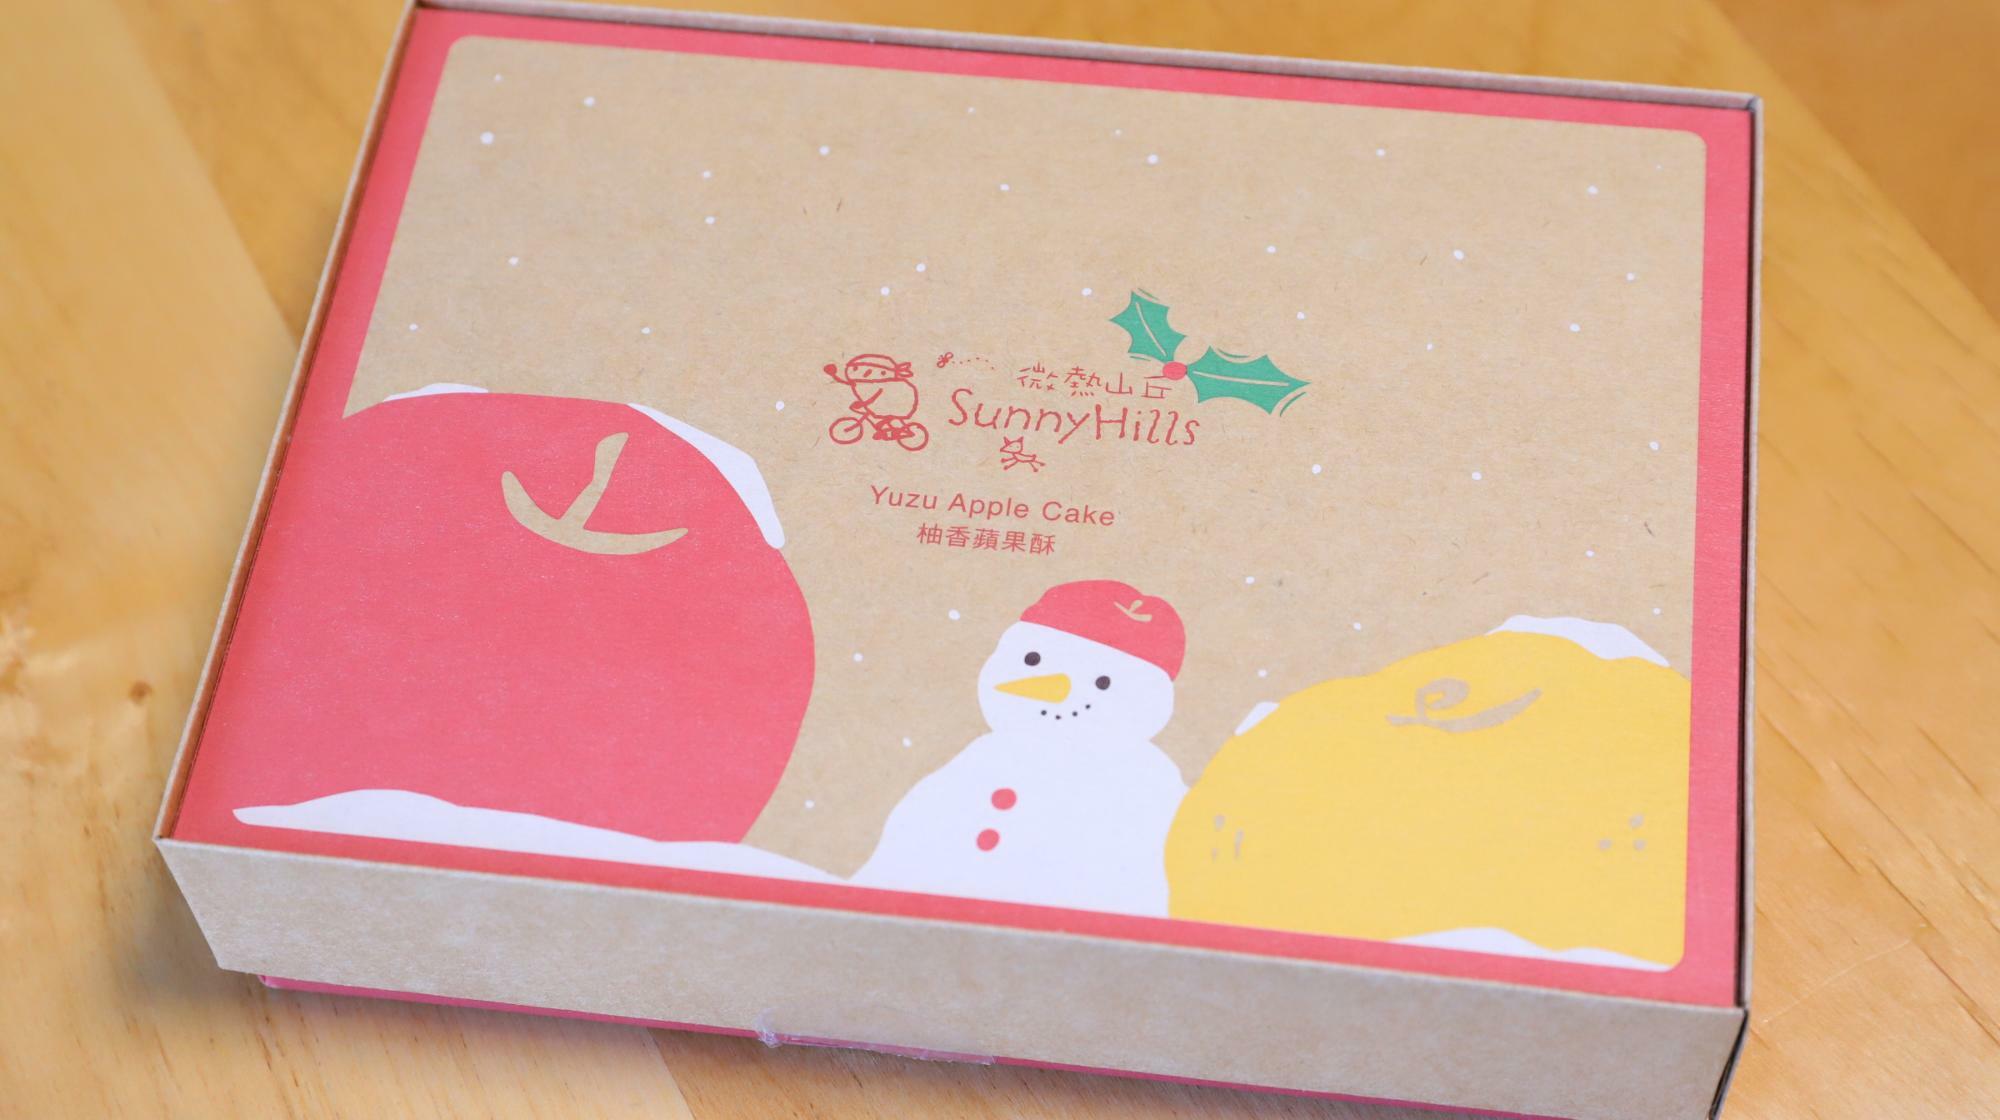 雪だるまが描かれたサニーヒルズの季節限定ゆずりんごケーキ